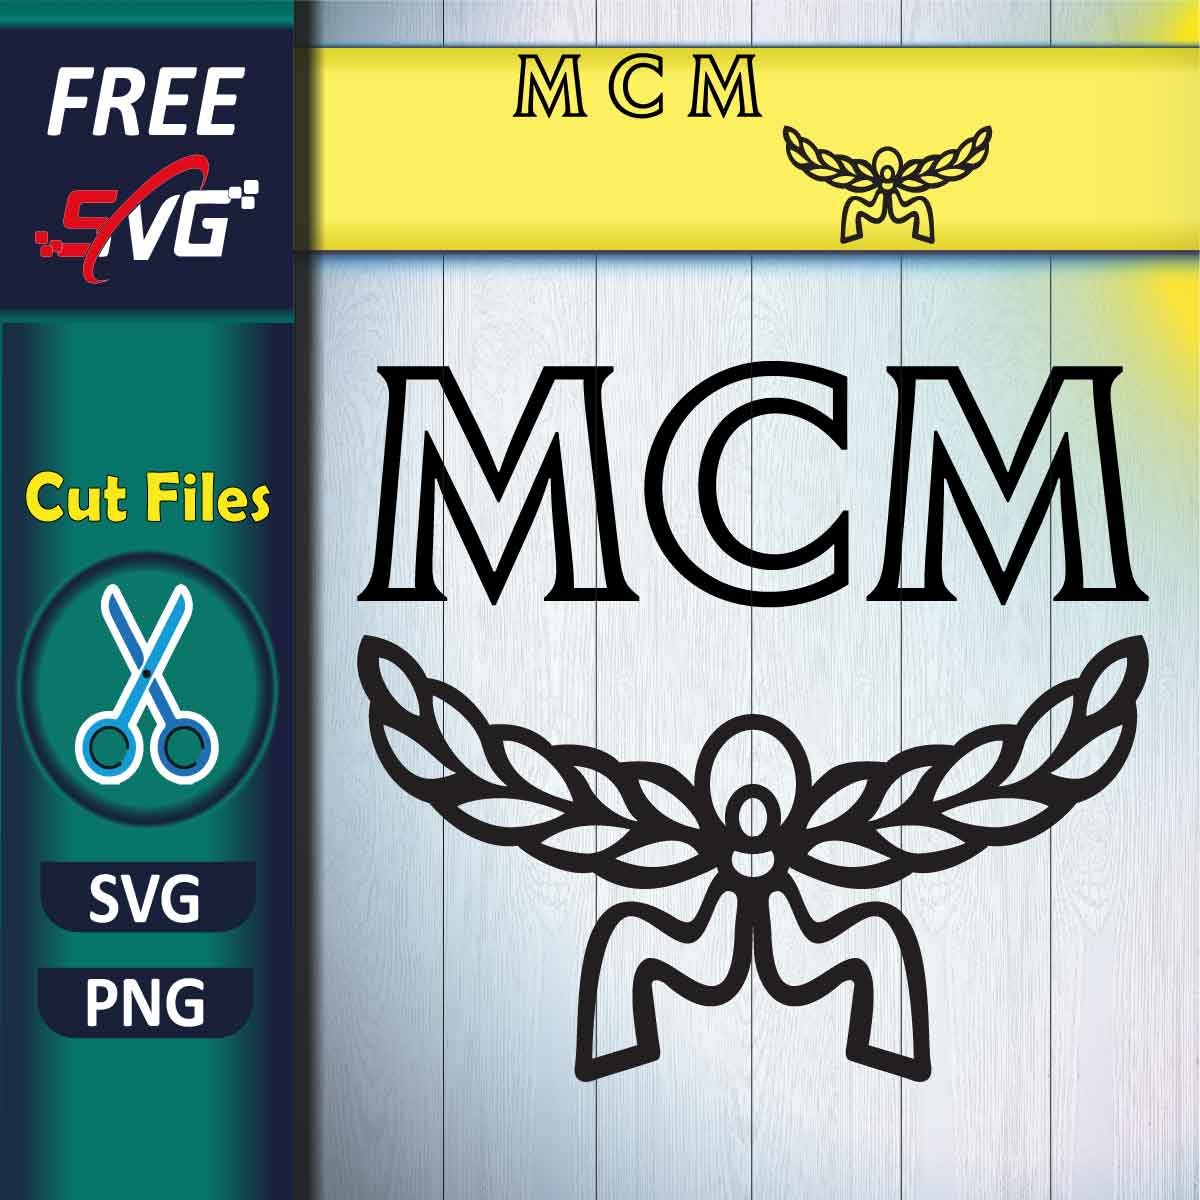 MCM Logo SVG Free - Free SVG Files